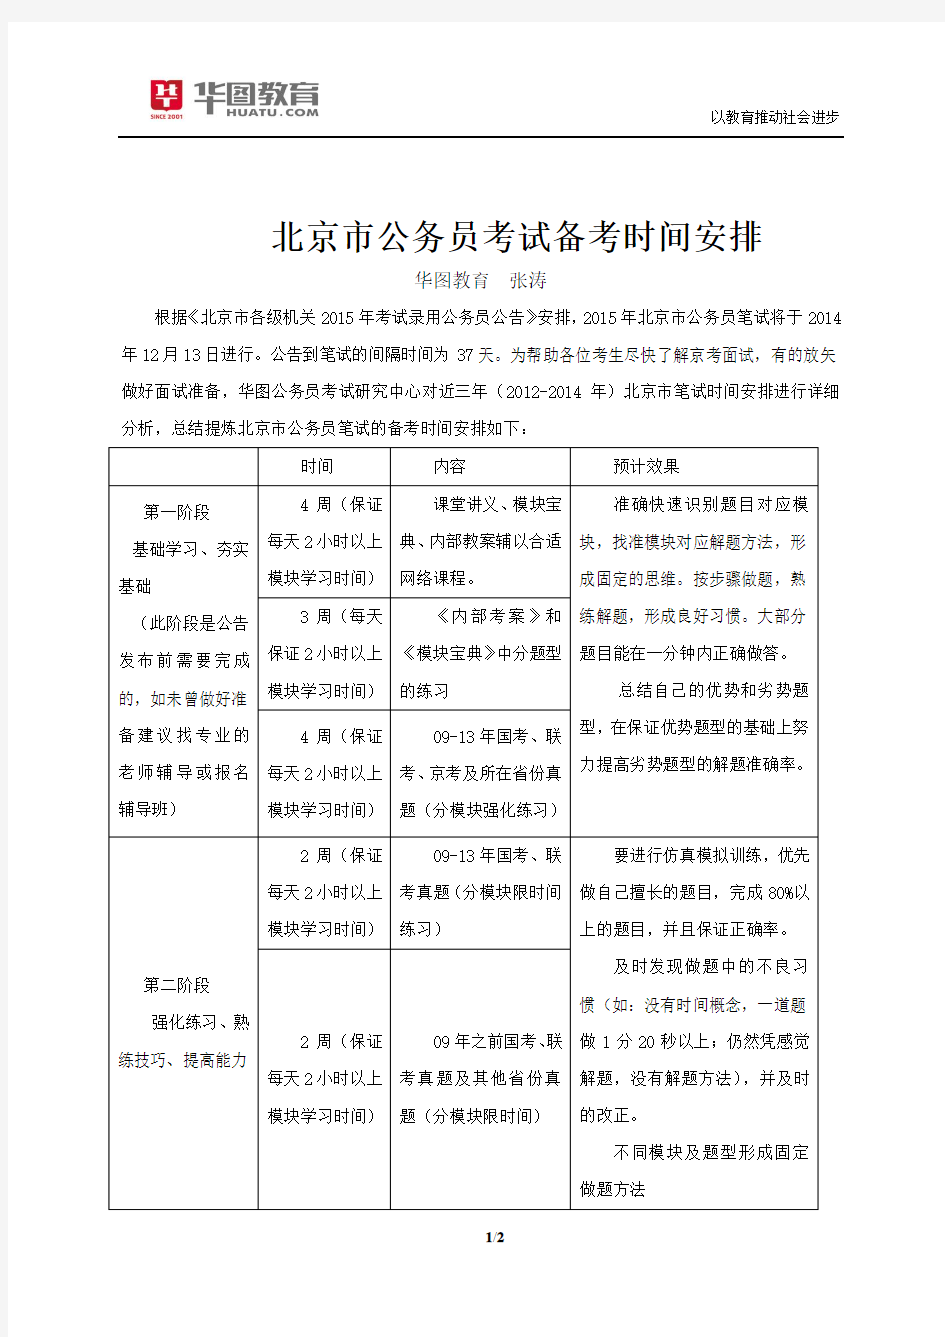 2015年北京公务员考试备考时间安排